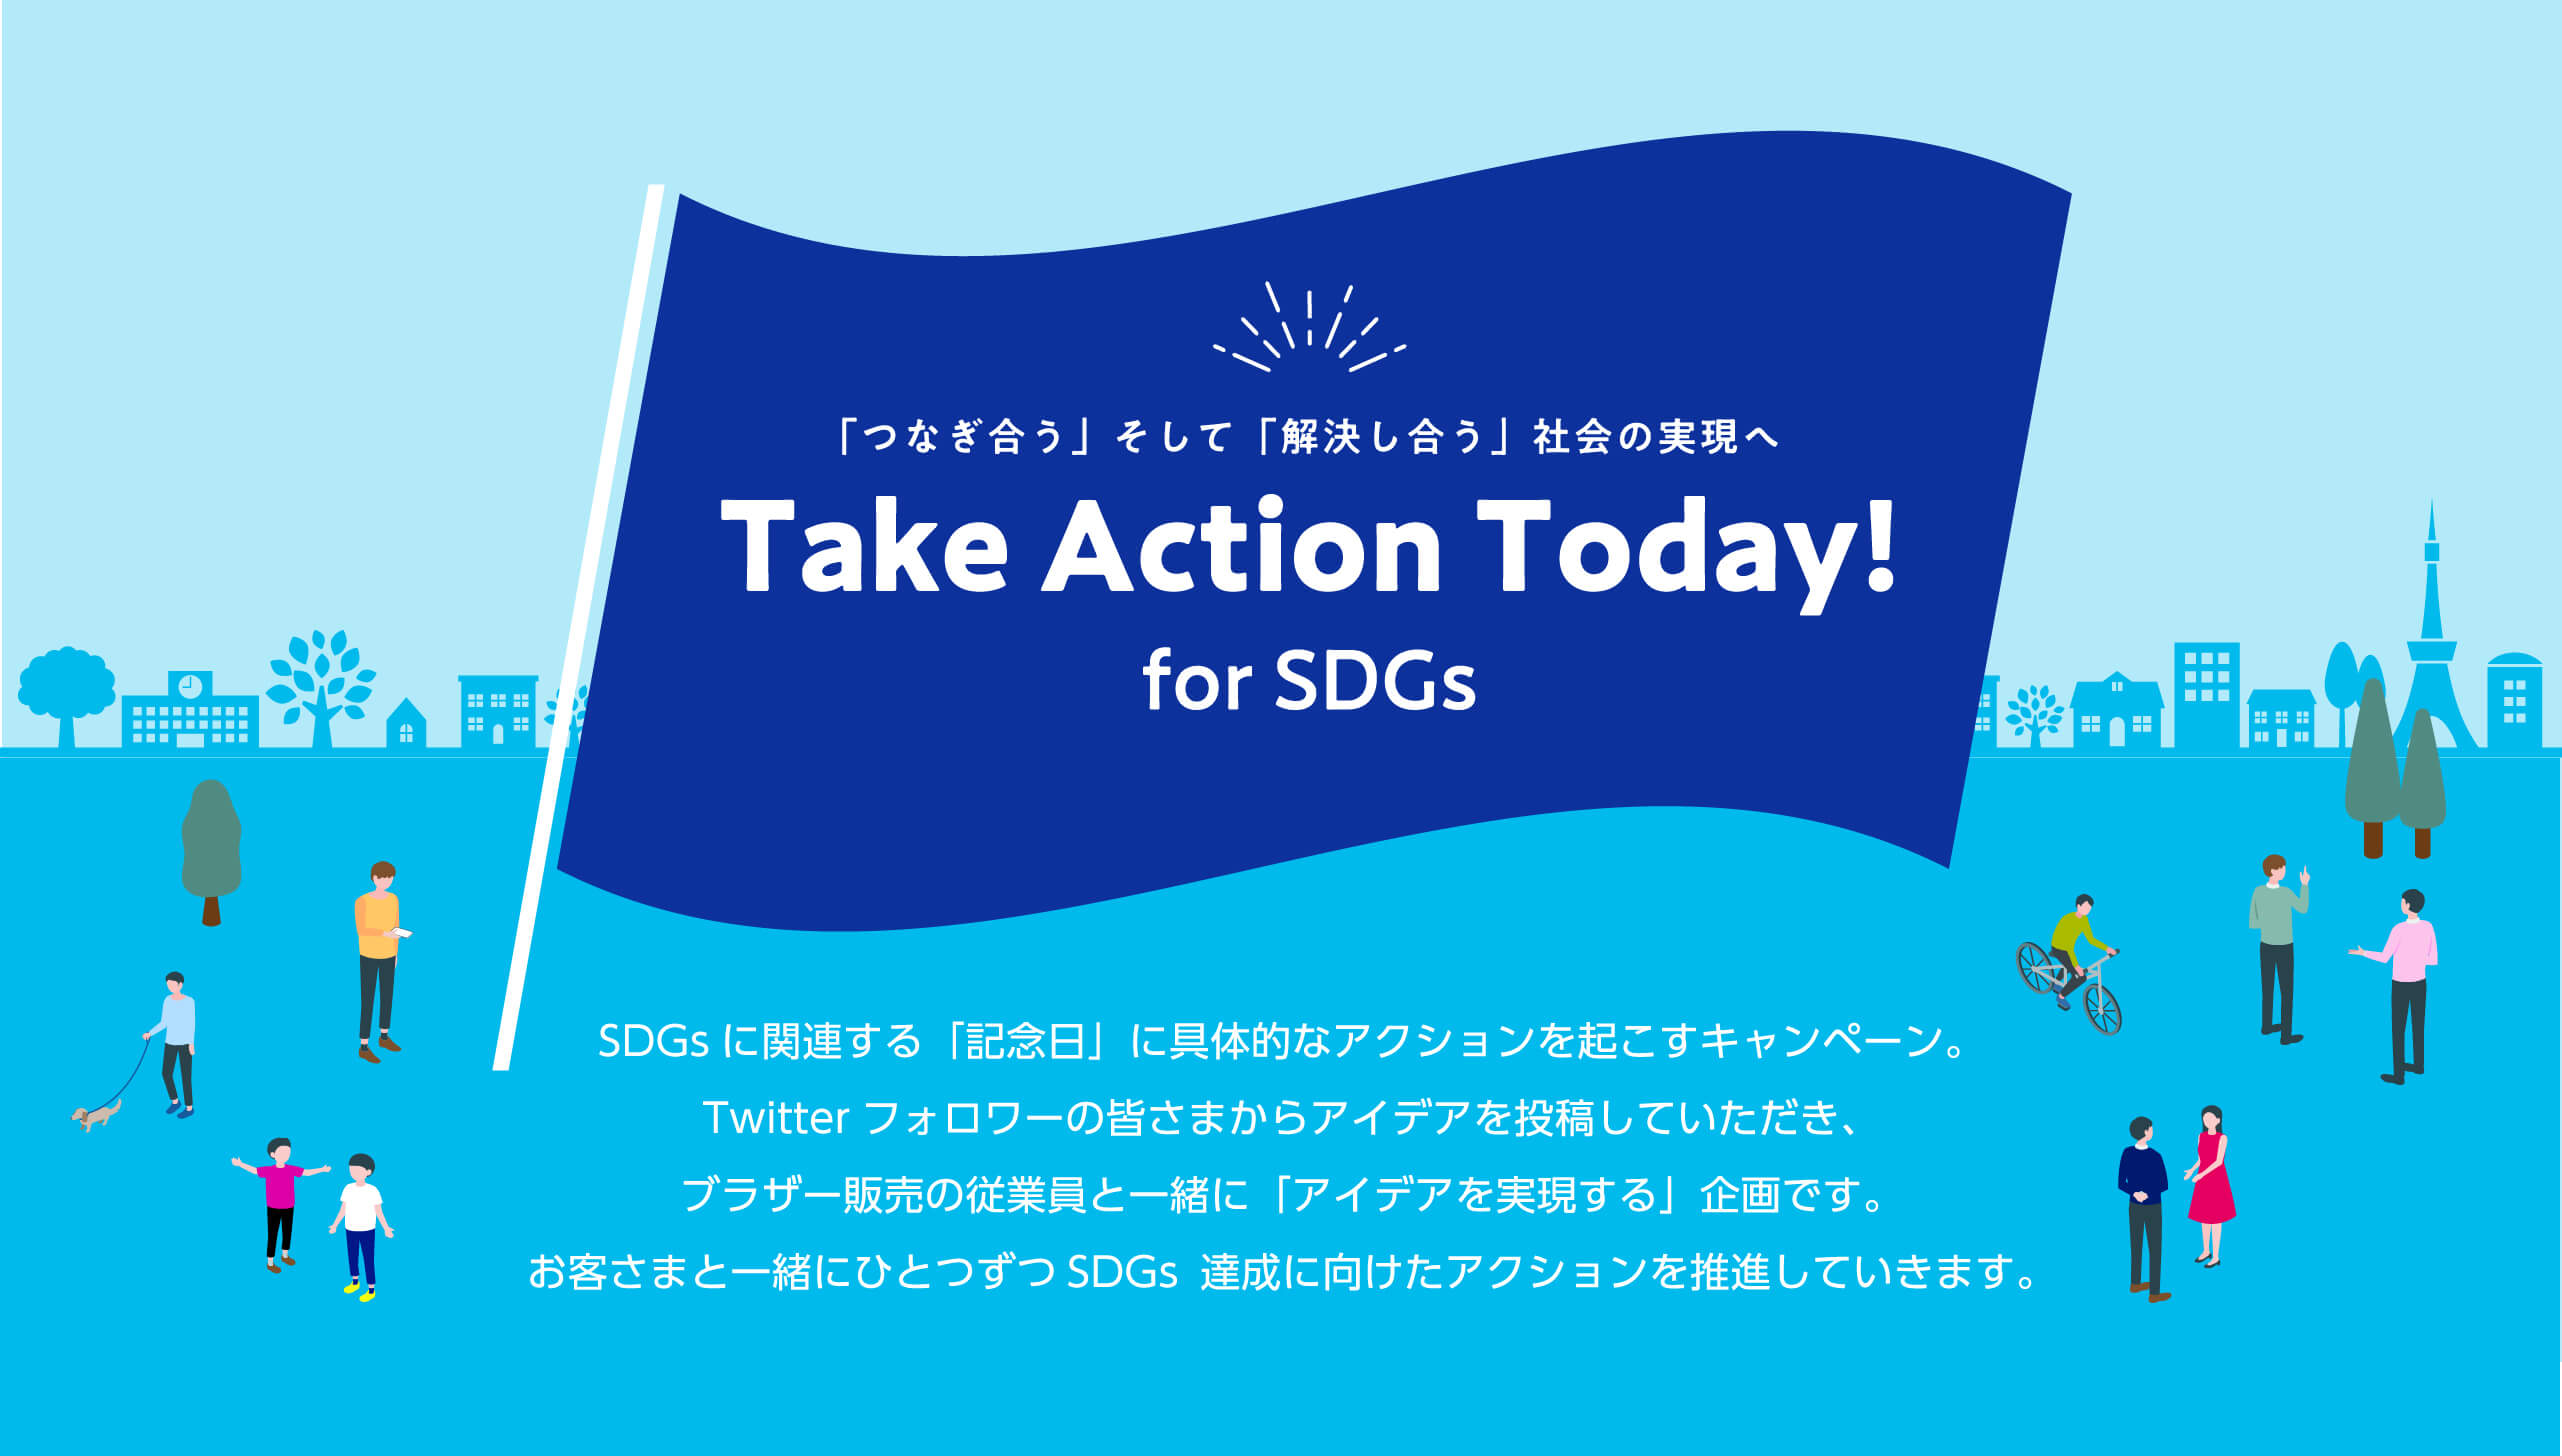 「つなぎ合う」そして「解決し合う」社会の実現へ Take Action Today! for SDGs